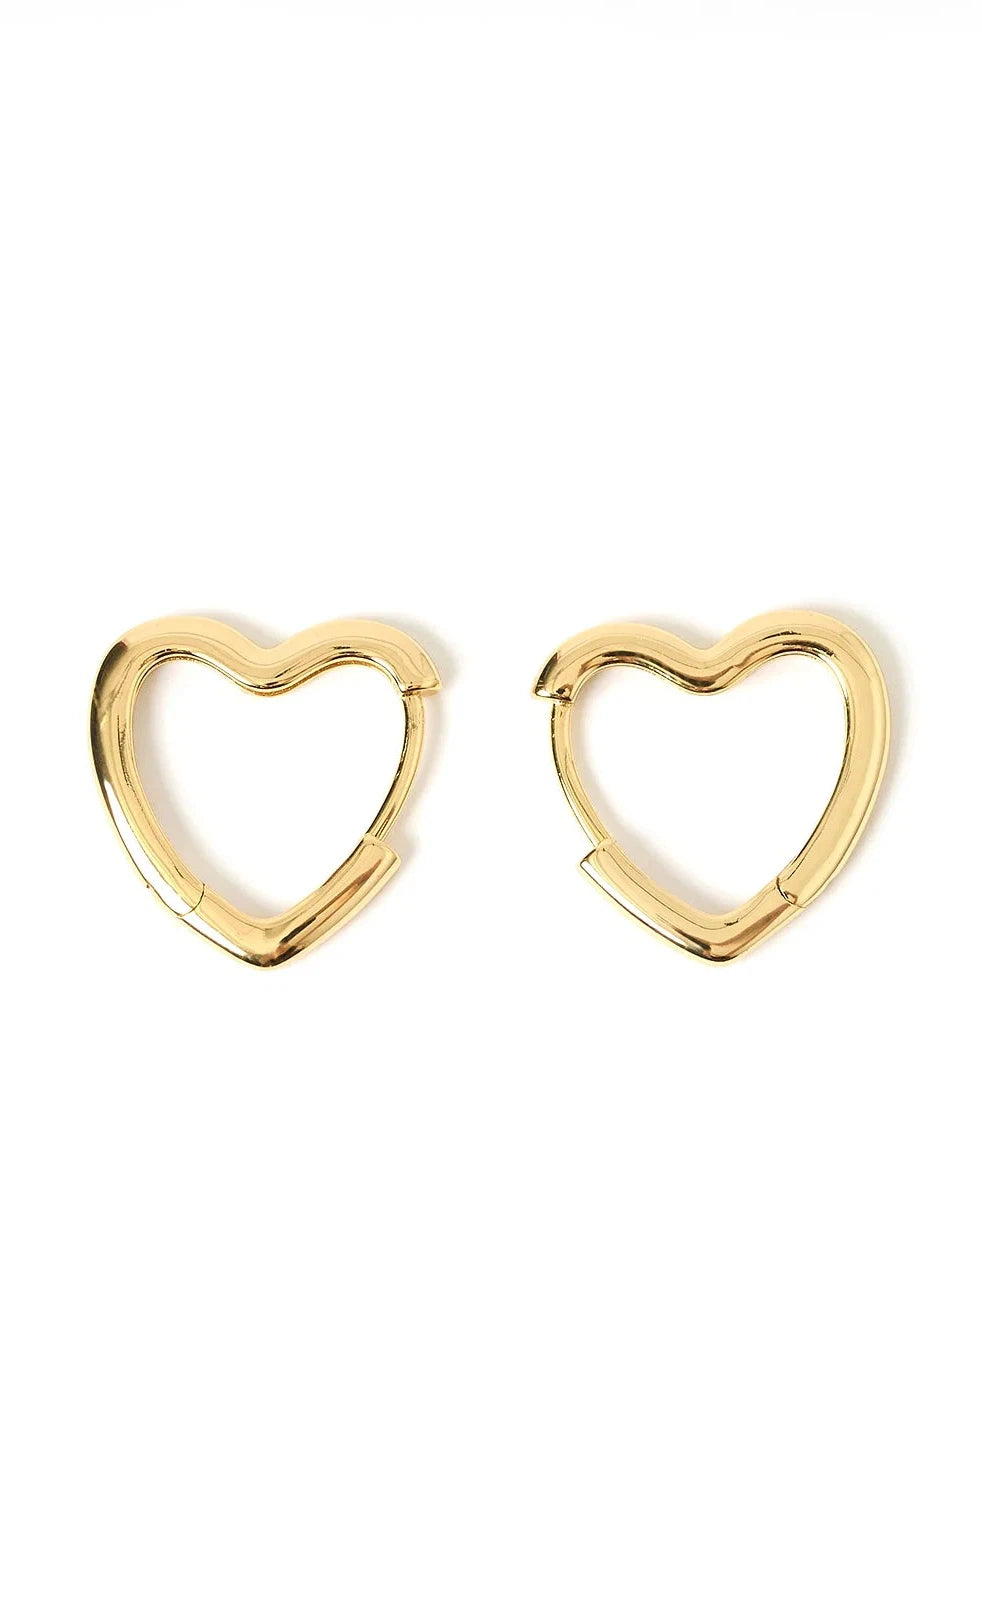 Sweetheart Gold Earrings - Large